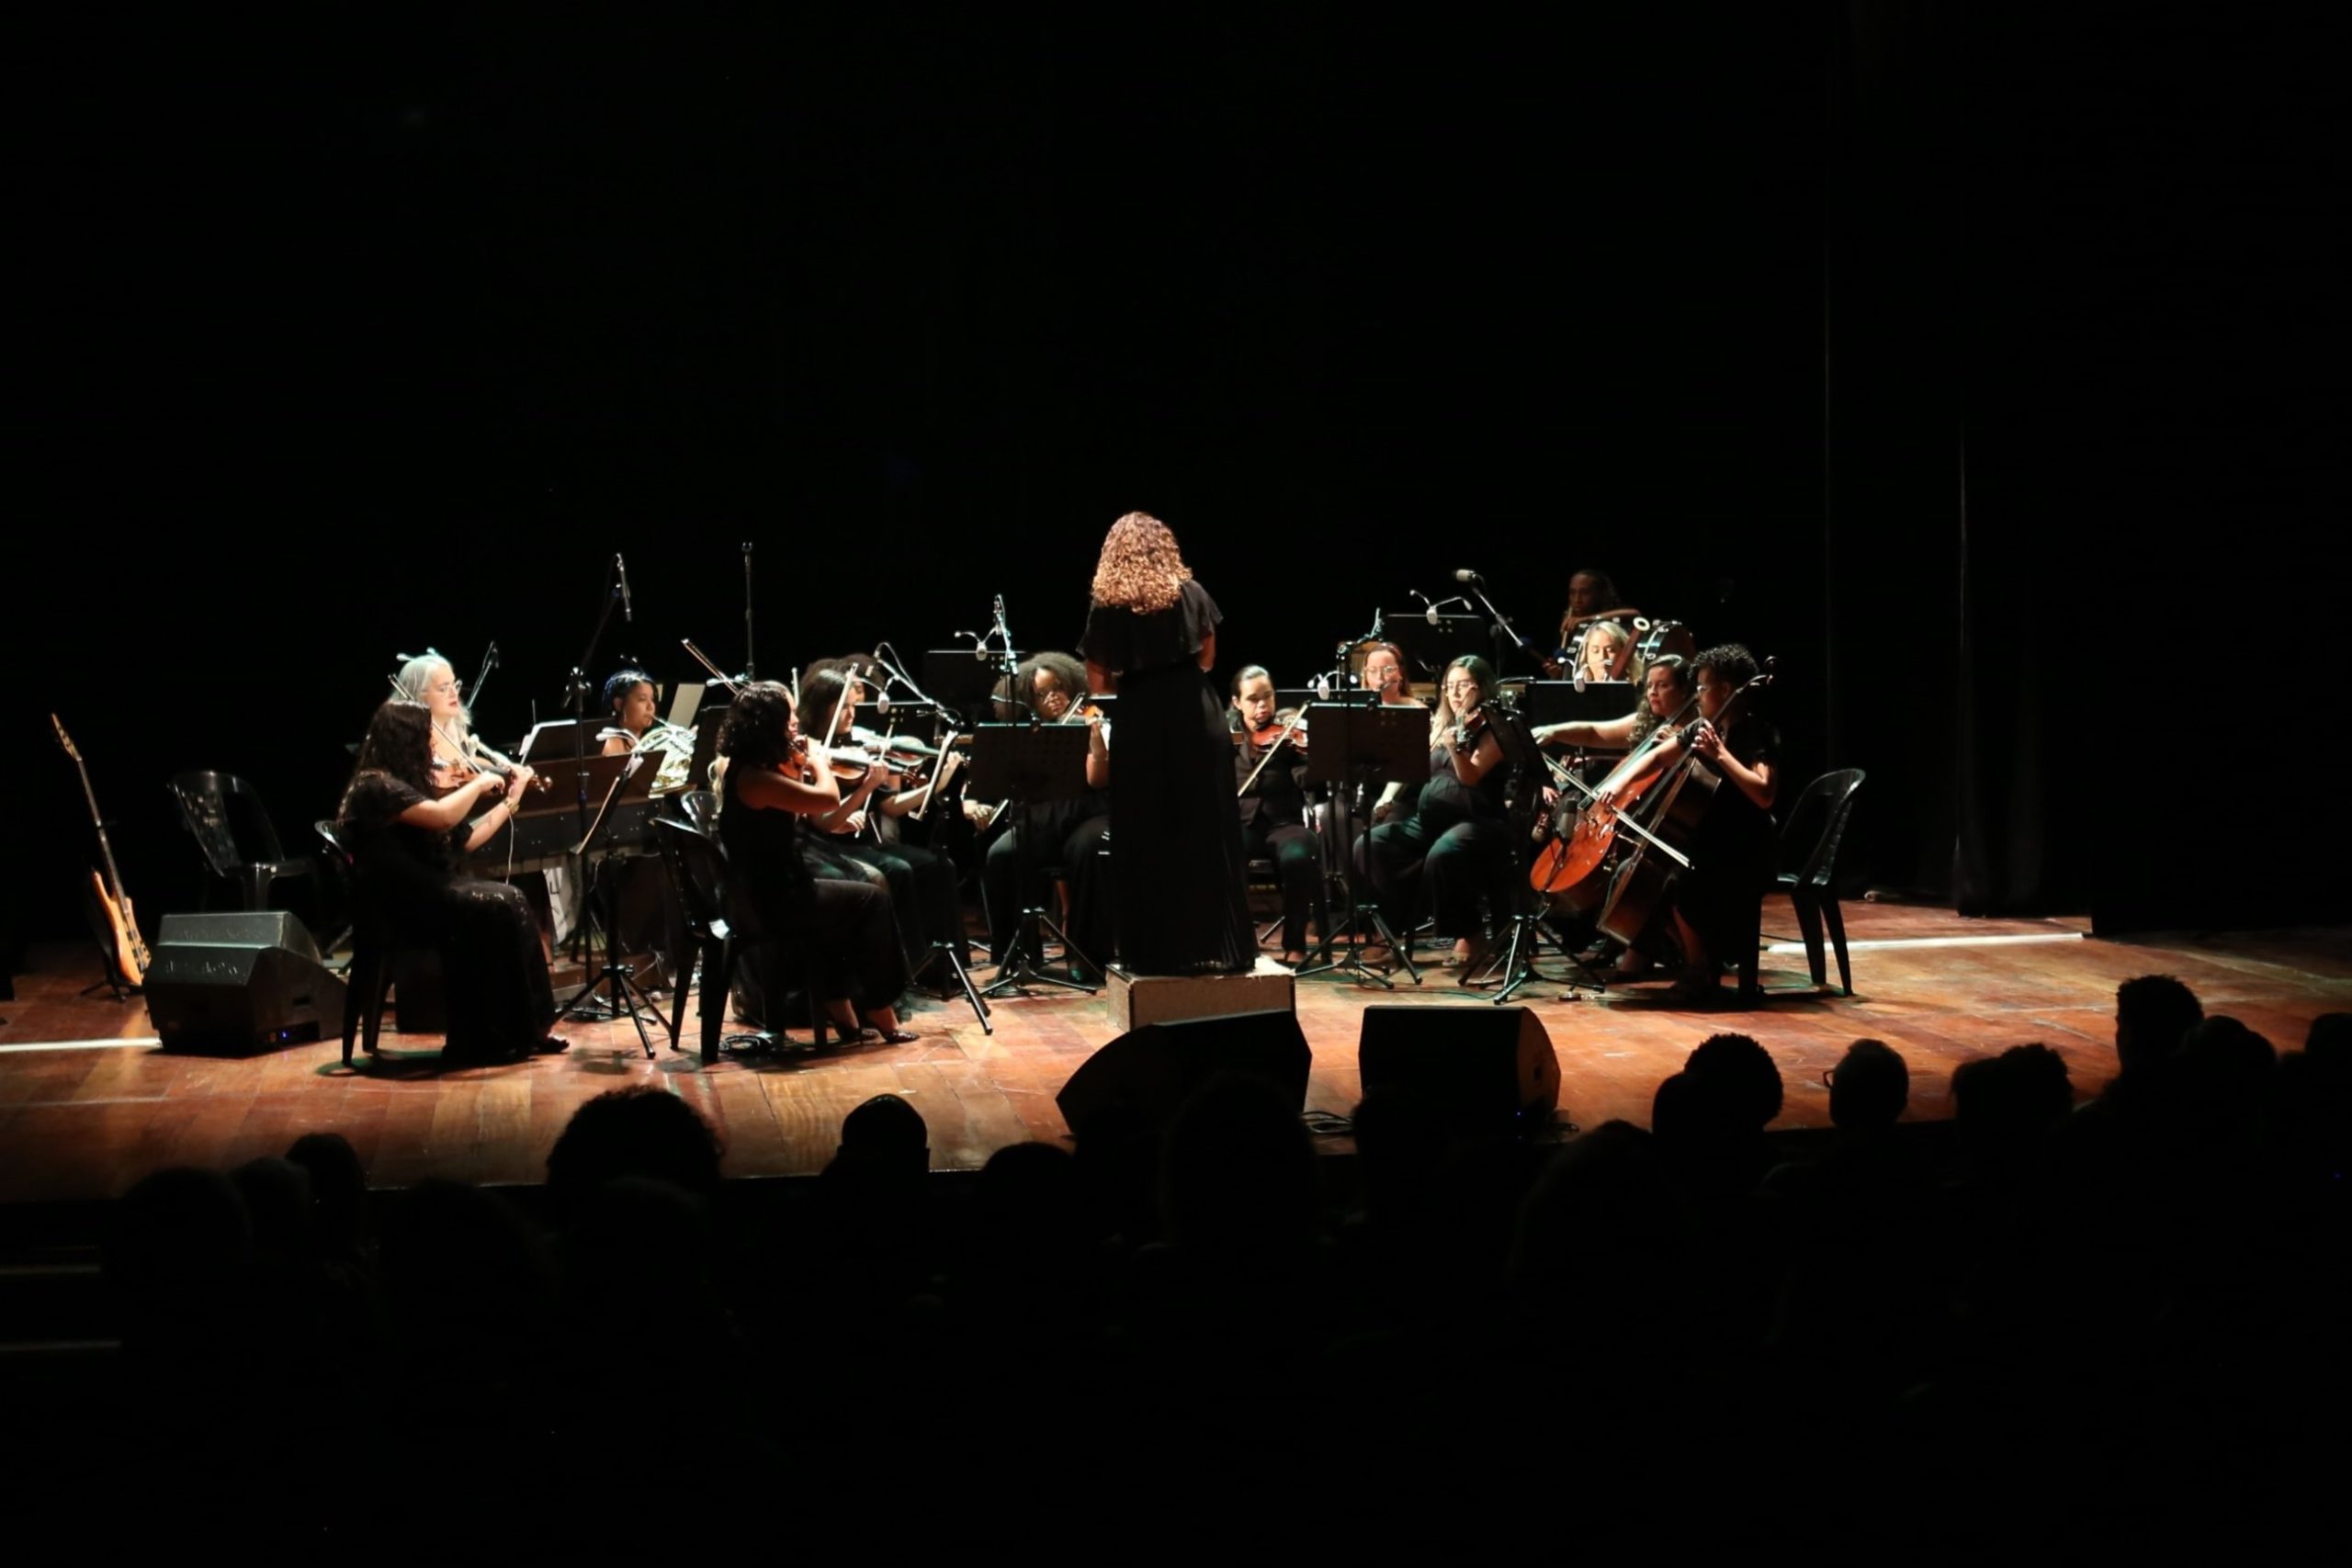 Sesc Nova Iguaçu recebe espetáculo da Orquestra Filarmônica Metropolitana na próxima sexta-feira